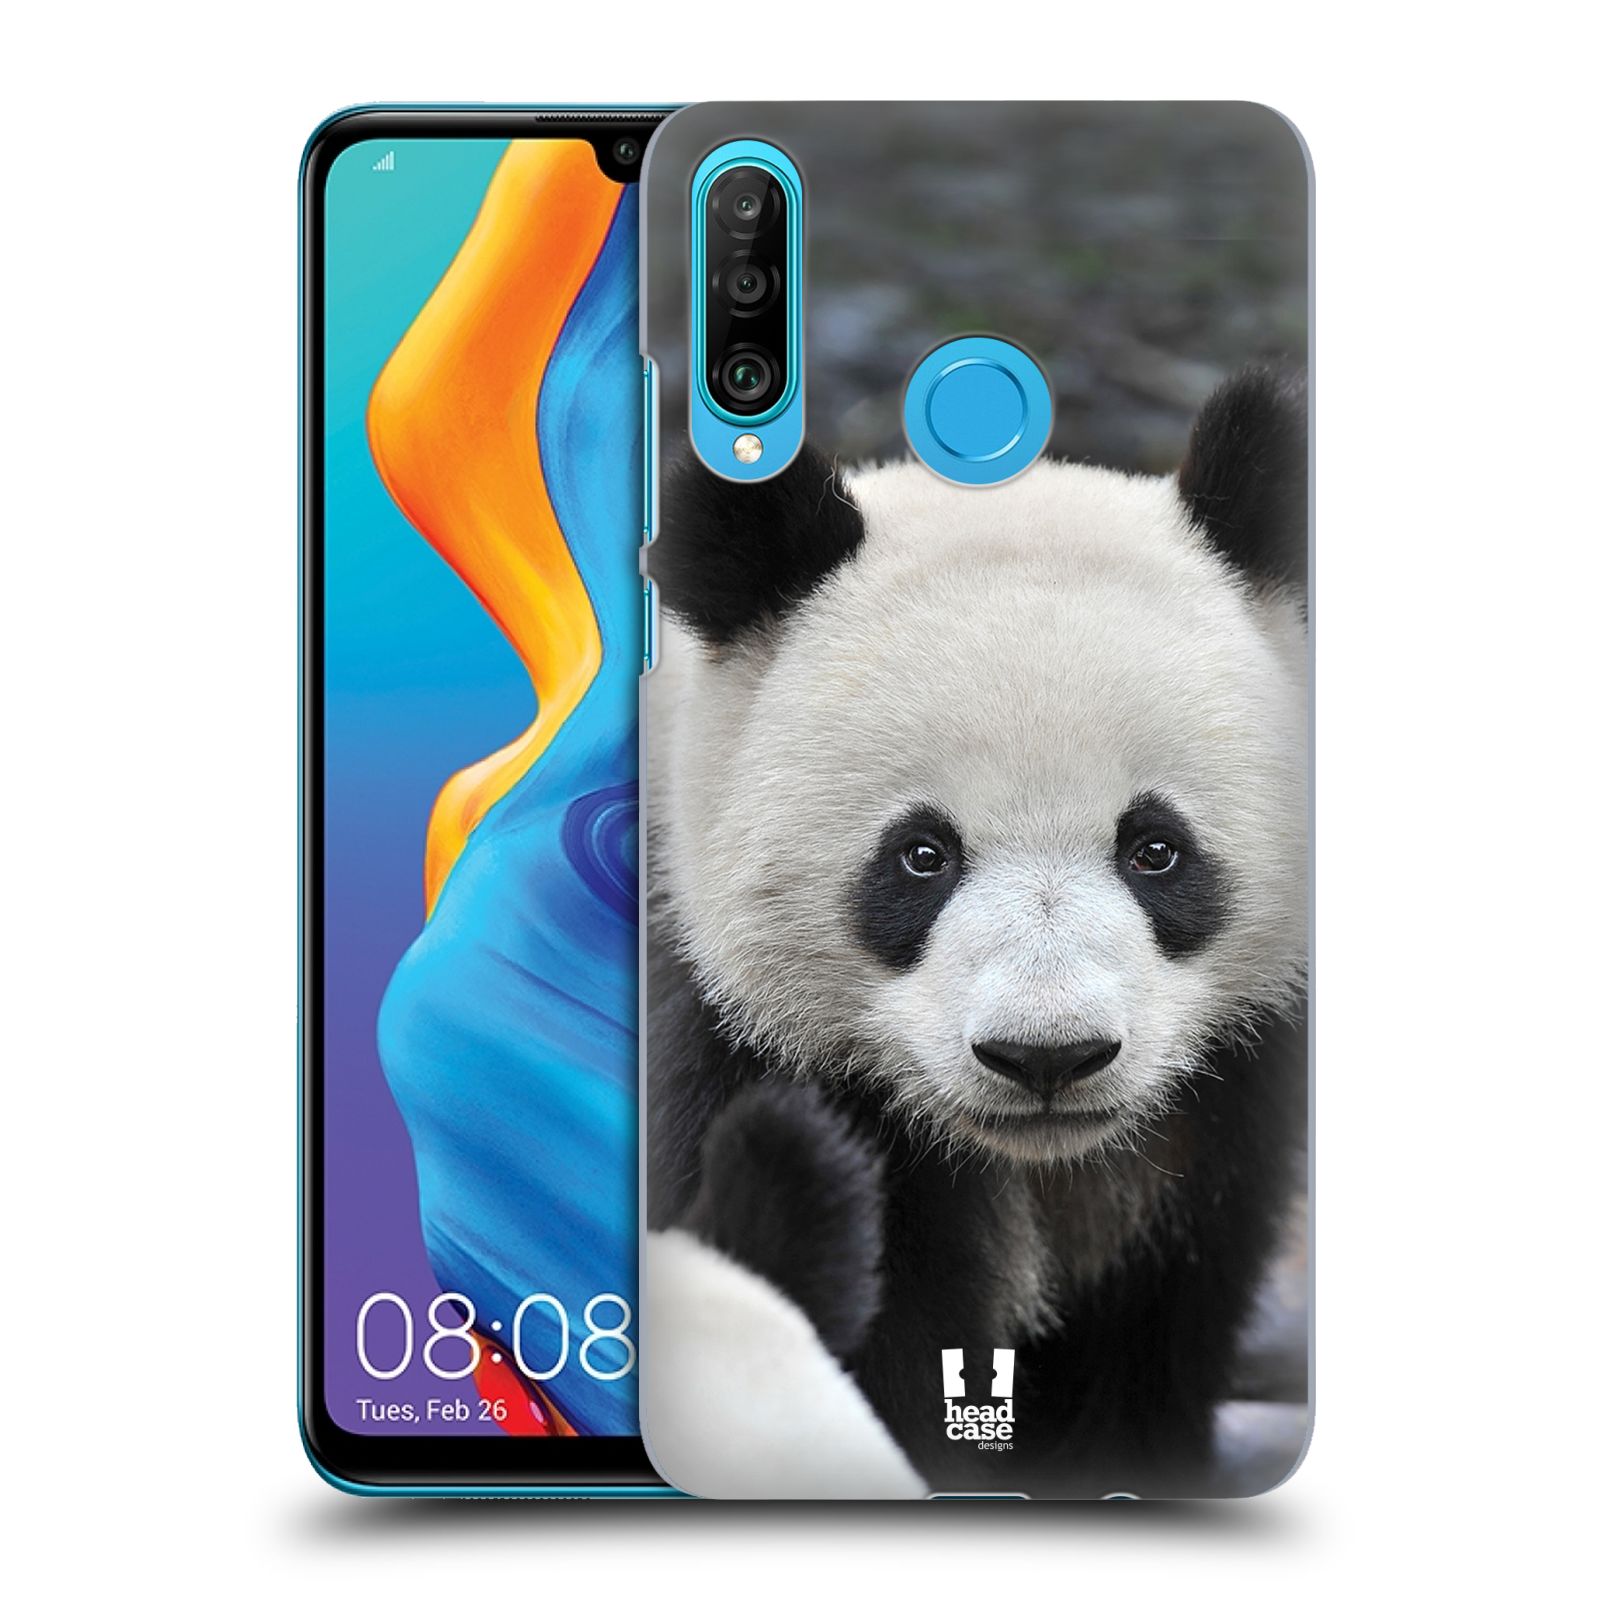 Zadní obal pro mobil Huawei P30 LITE - HEAD CASE - Svět zvířat medvěd panda